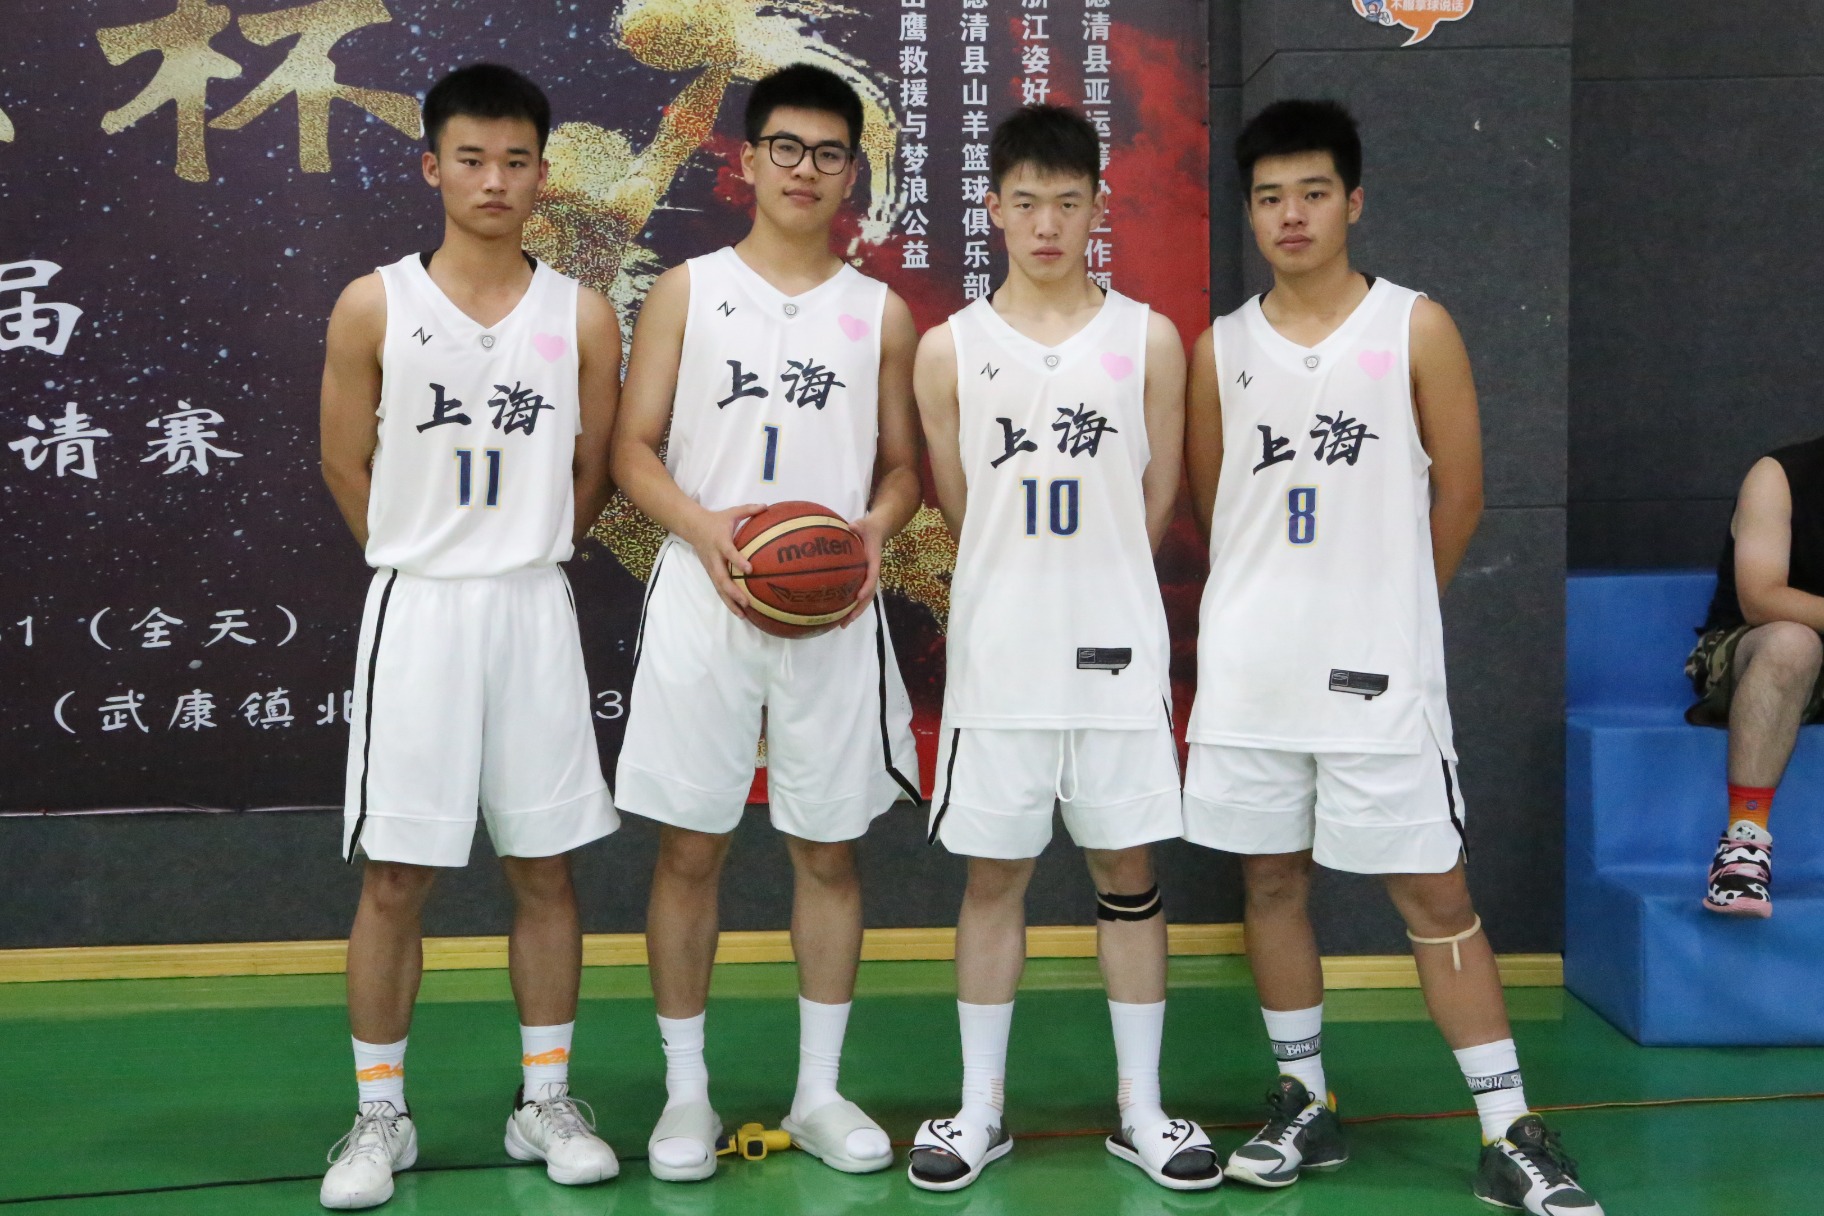 以篮球之名，点燃青春活力——“亚运我来了”姿正杯德清县首届青少年篮球邀请赛火热开赛